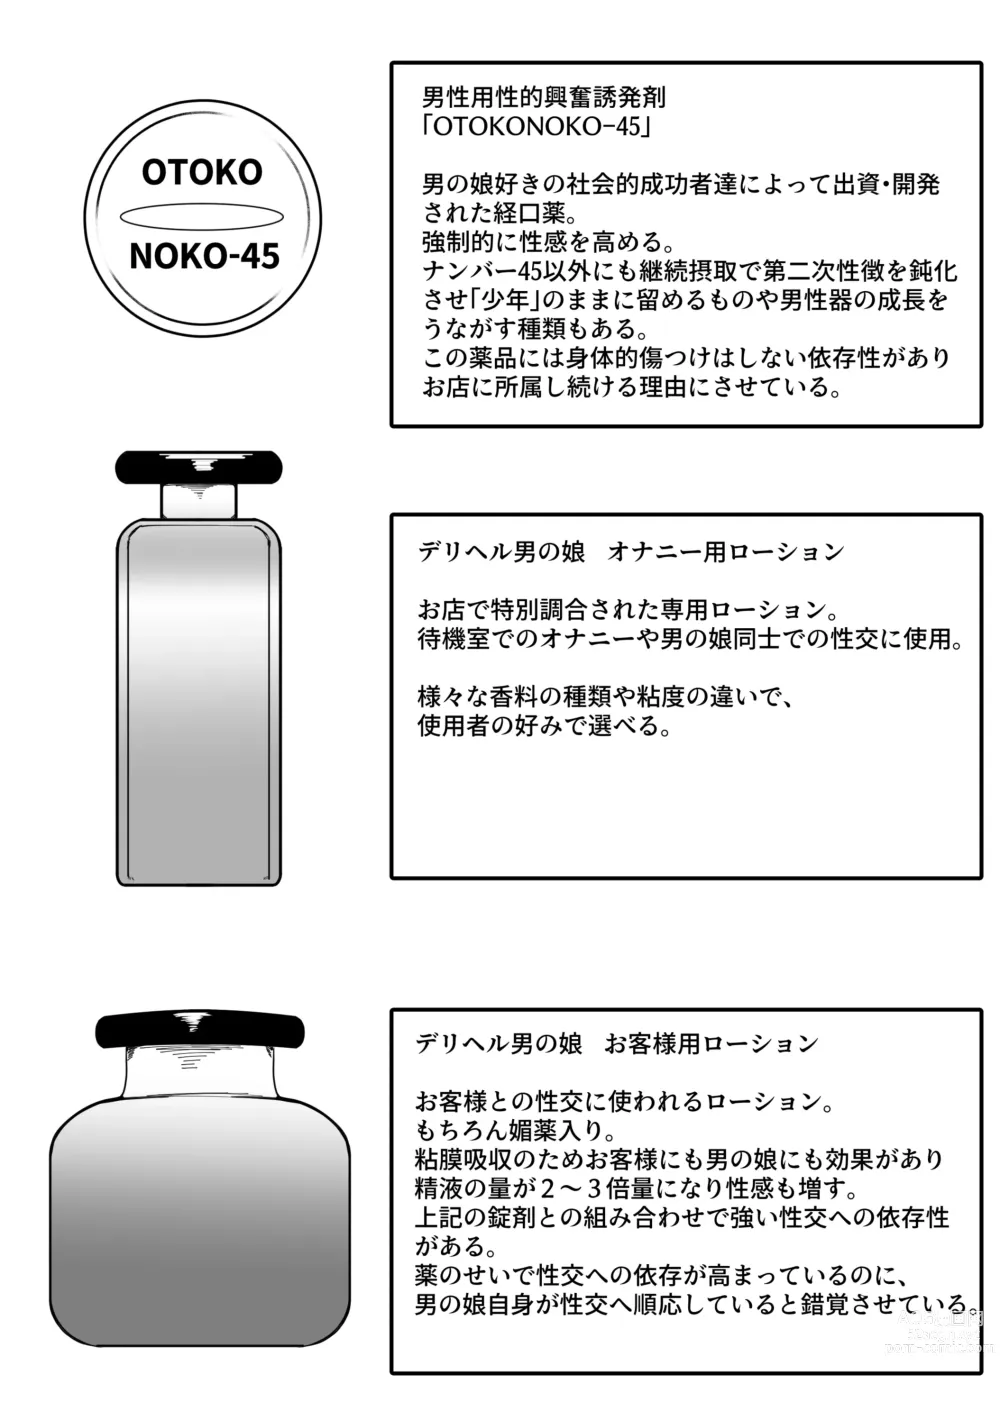 Page 66 of doujinshi DeliHeal Otoko no Musume Report 1 Ore no Hajimete no Otoko no Musume